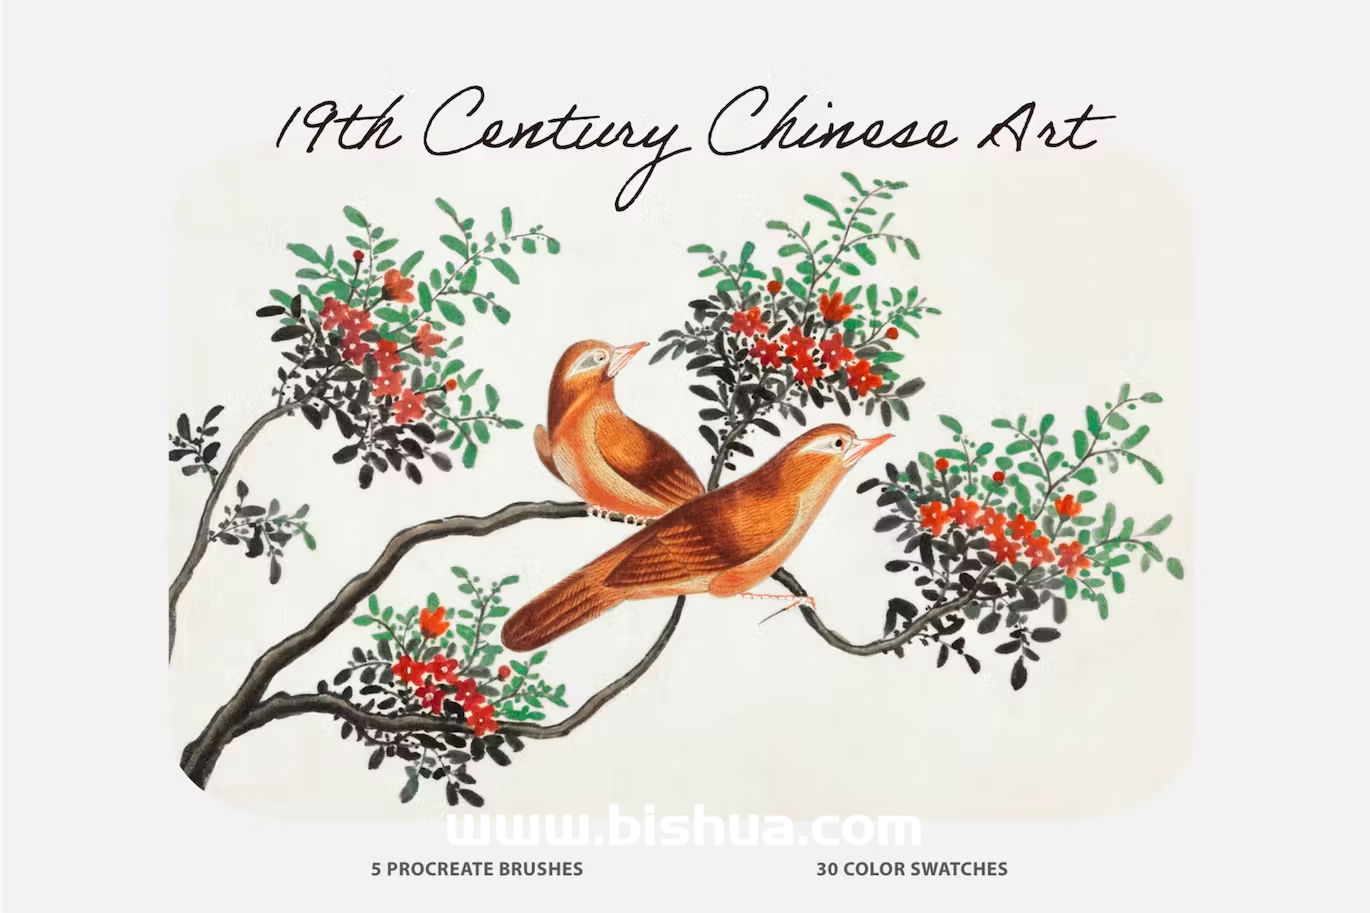 Procreate笔刷+色卡丨19世纪中国艺术画笔